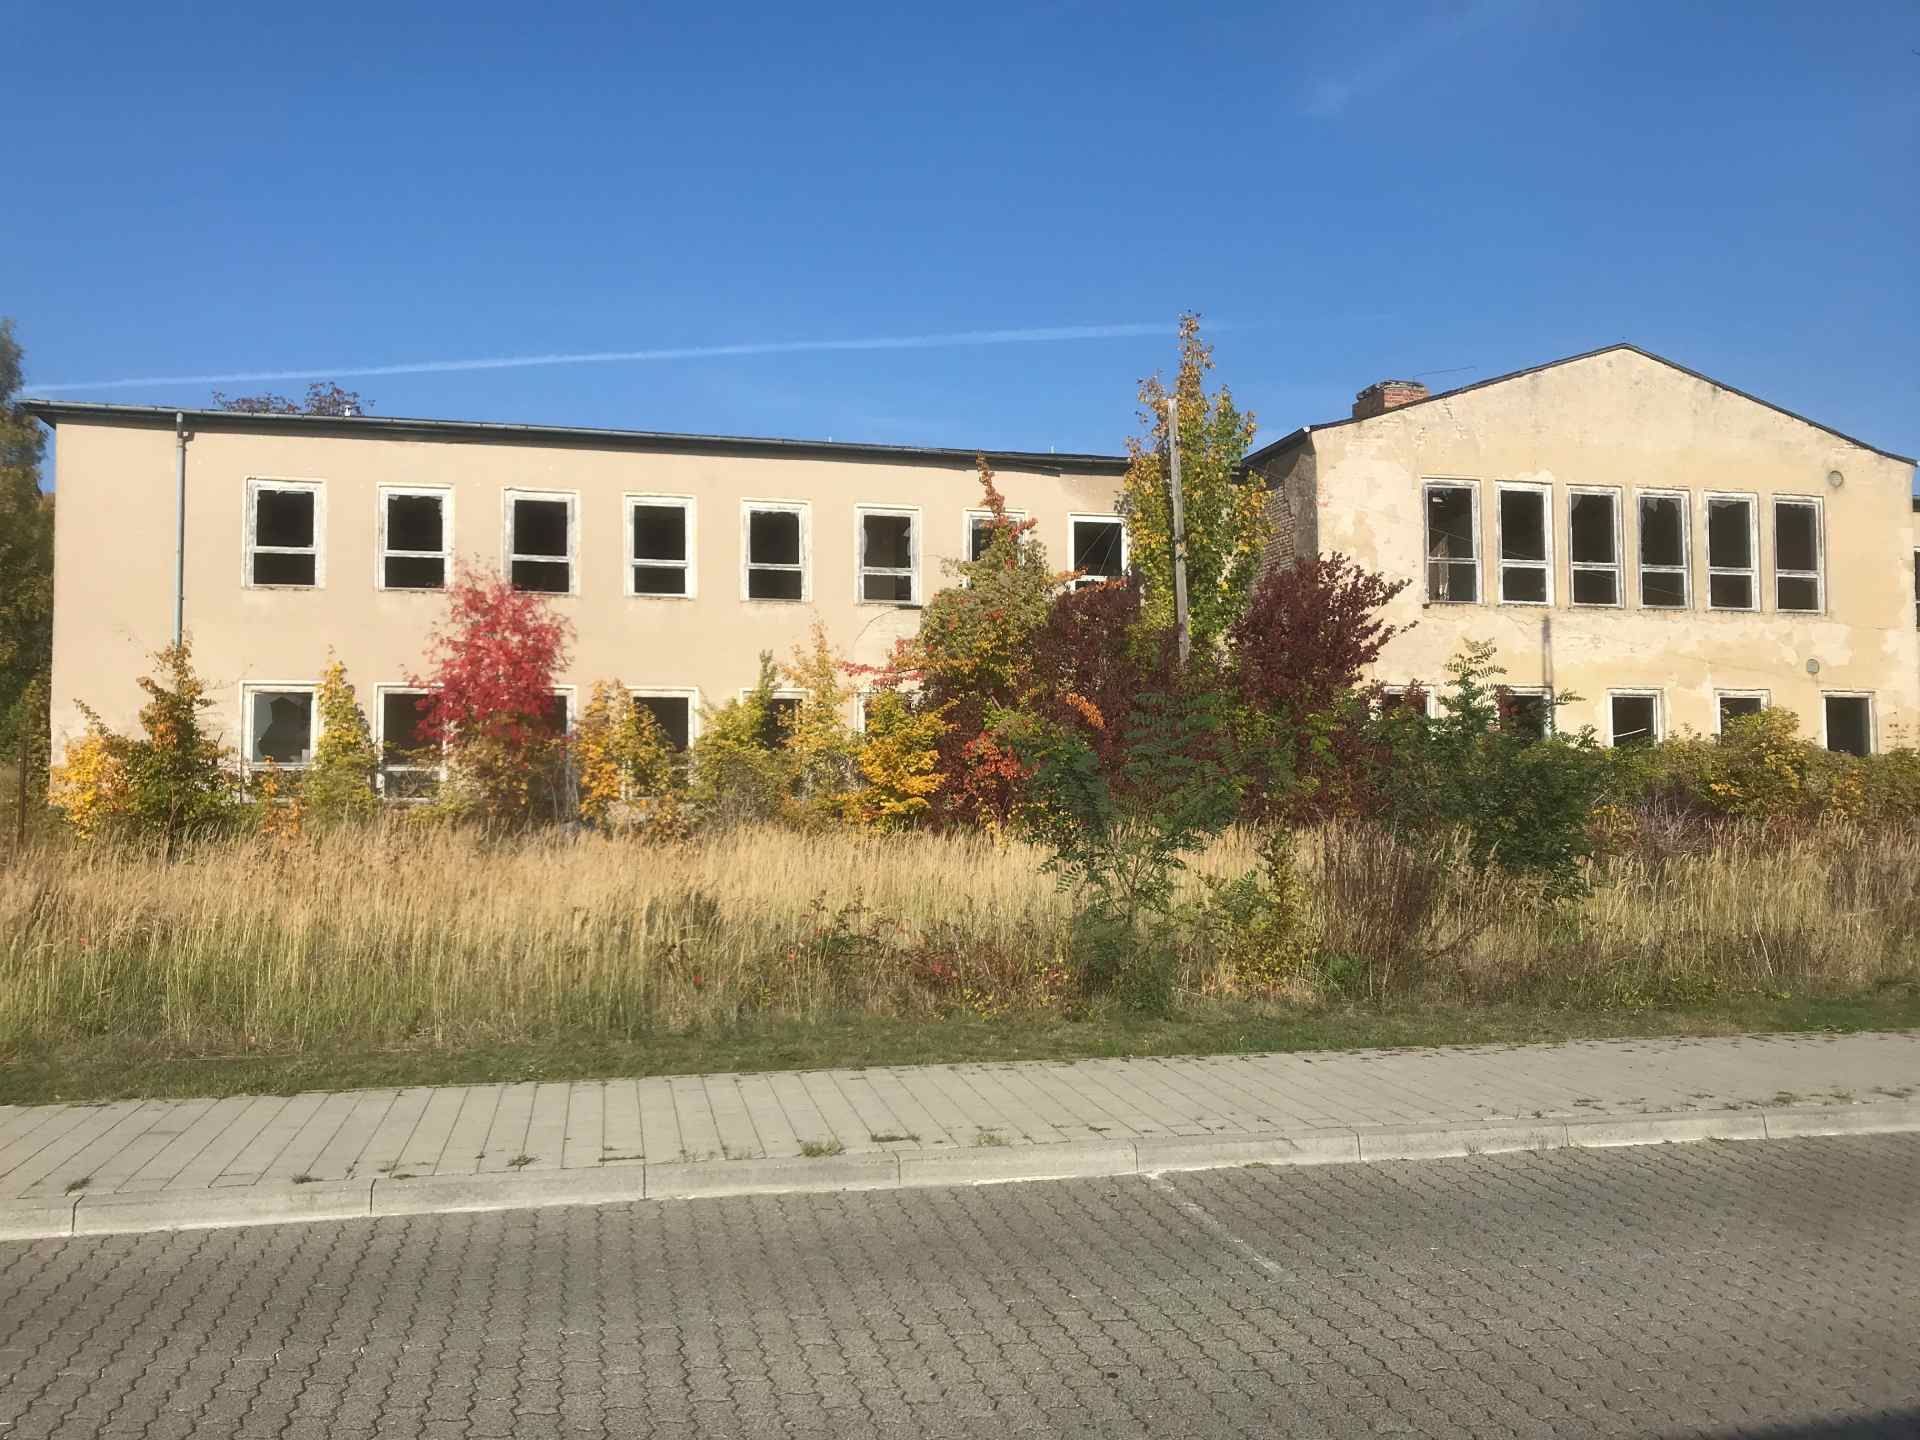 Leerstehendes Gebäude auf dem ehemaligen Bahnhofsgelände in Sassnitz.